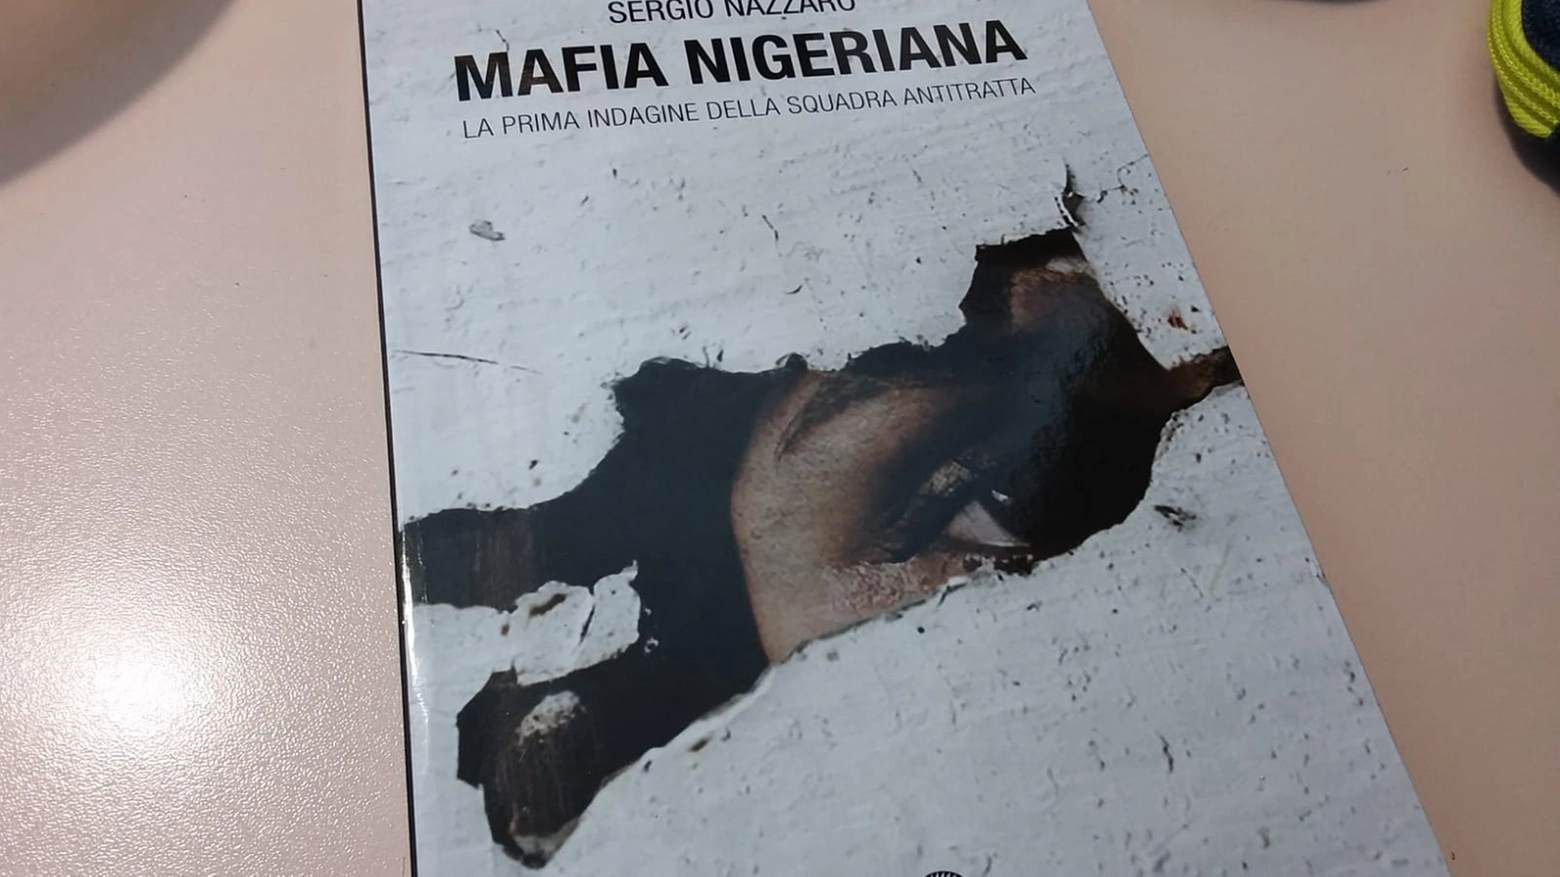 Mafia nigeriana, il nuovo libro di Sergio Nazzaro